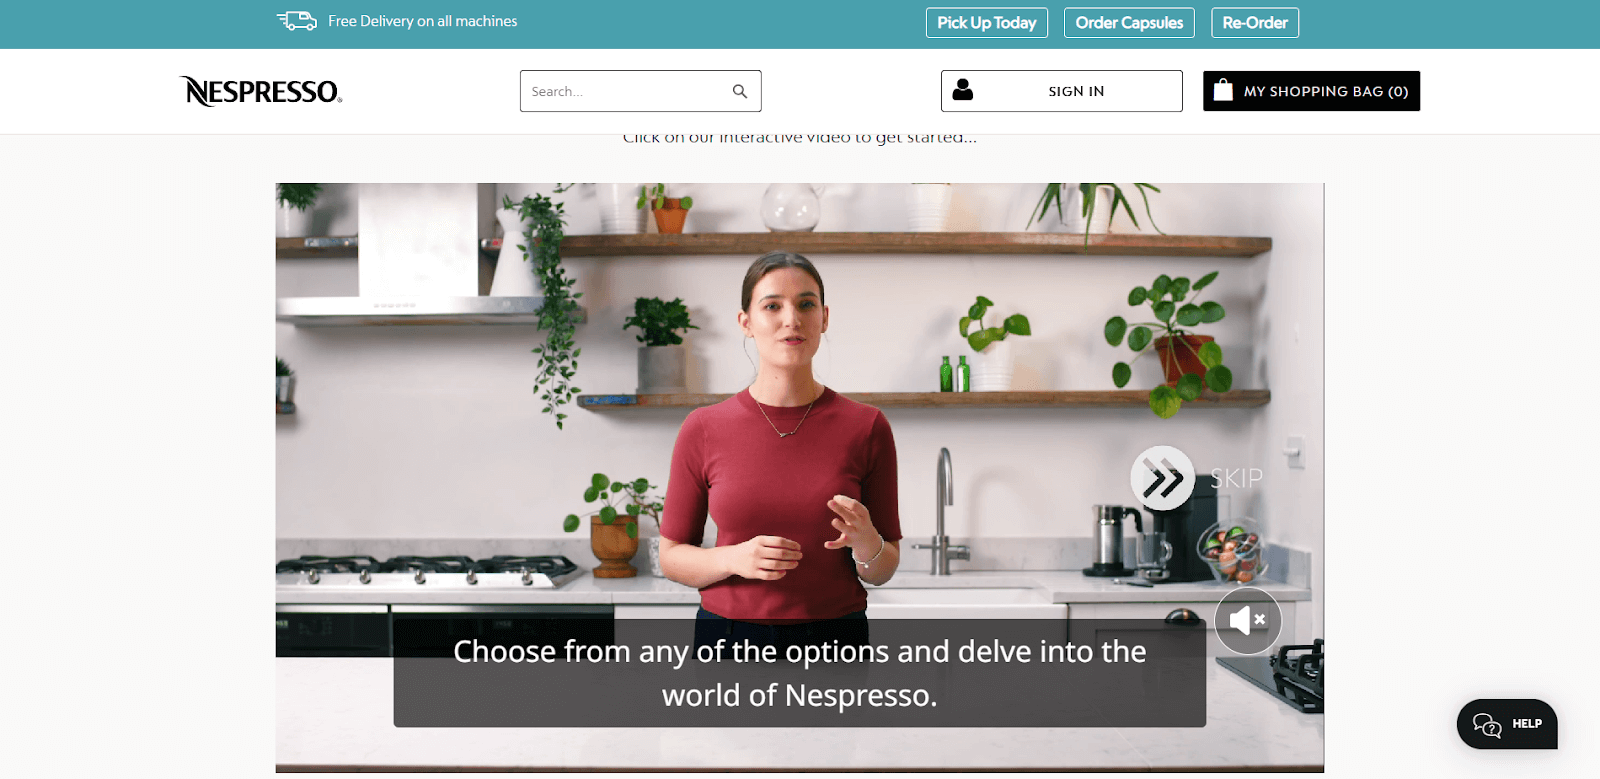 интерактивное видео от компании Nespresso